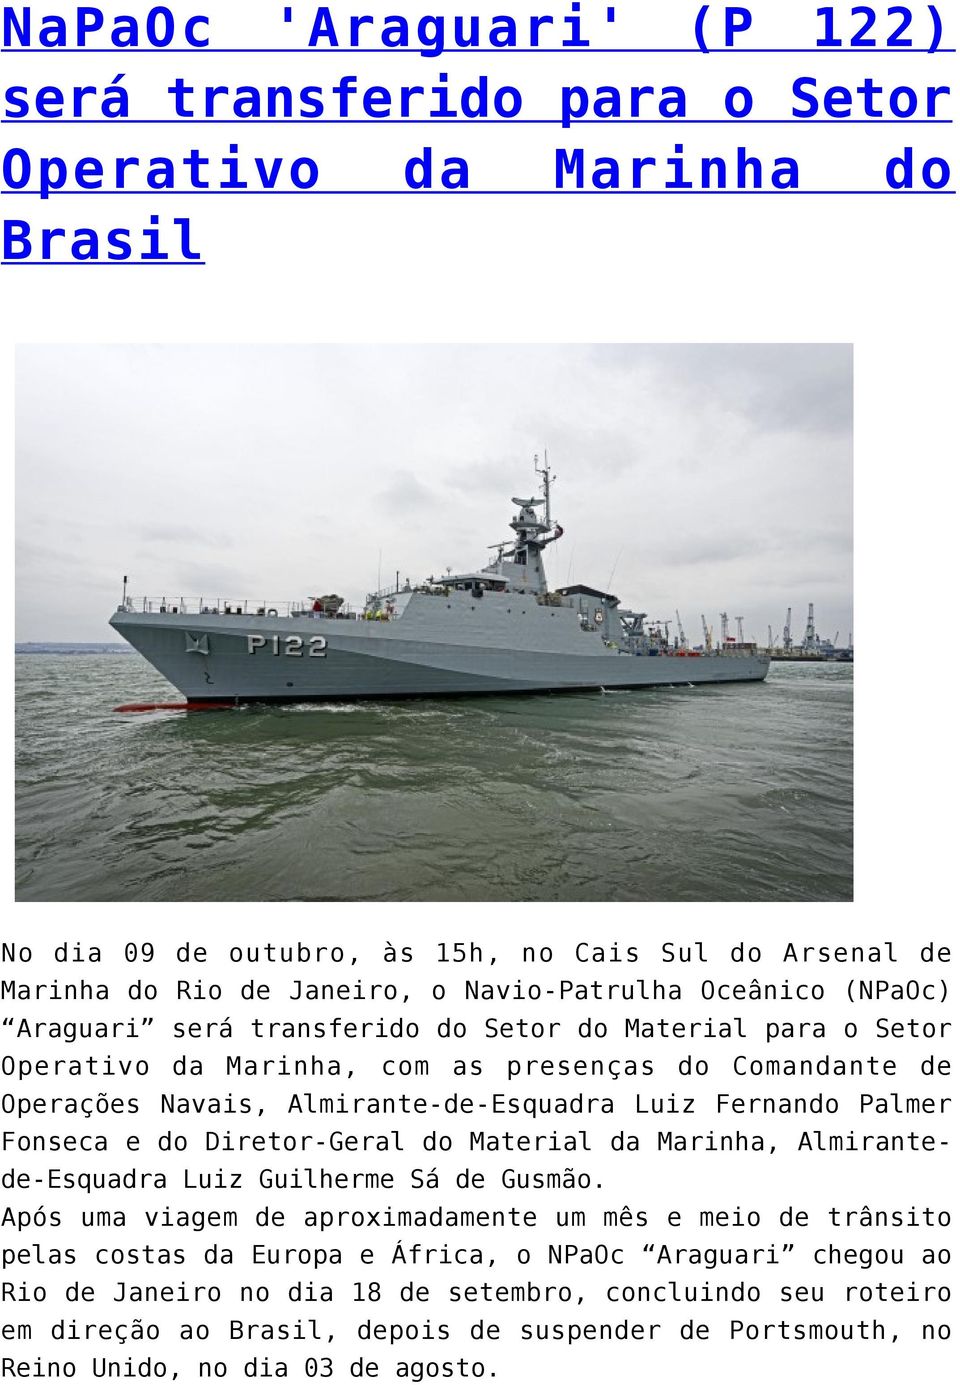 Palmer Fonseca e do Diretor-Geral do Material da Marinha, Almirantede-Esquadra Luiz Guilherme Sá de Gusmão.